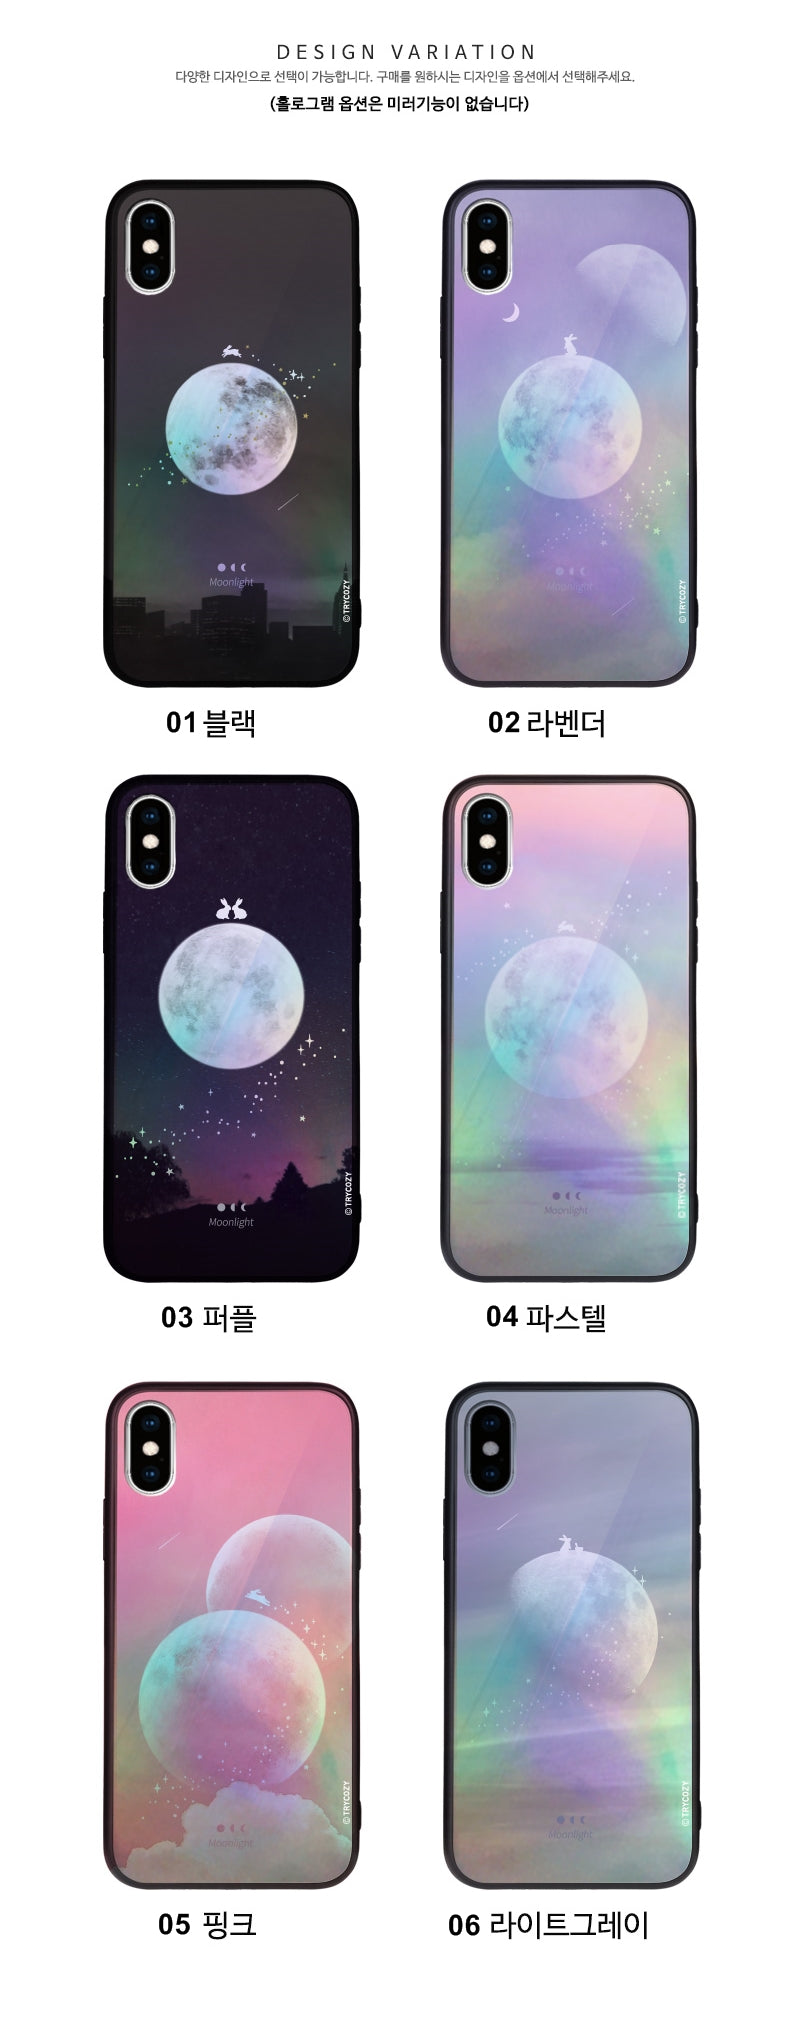 韓國直送 | M41 MOON - 炫彩鏡面手機殼 iPhone / Samsung Galaxy